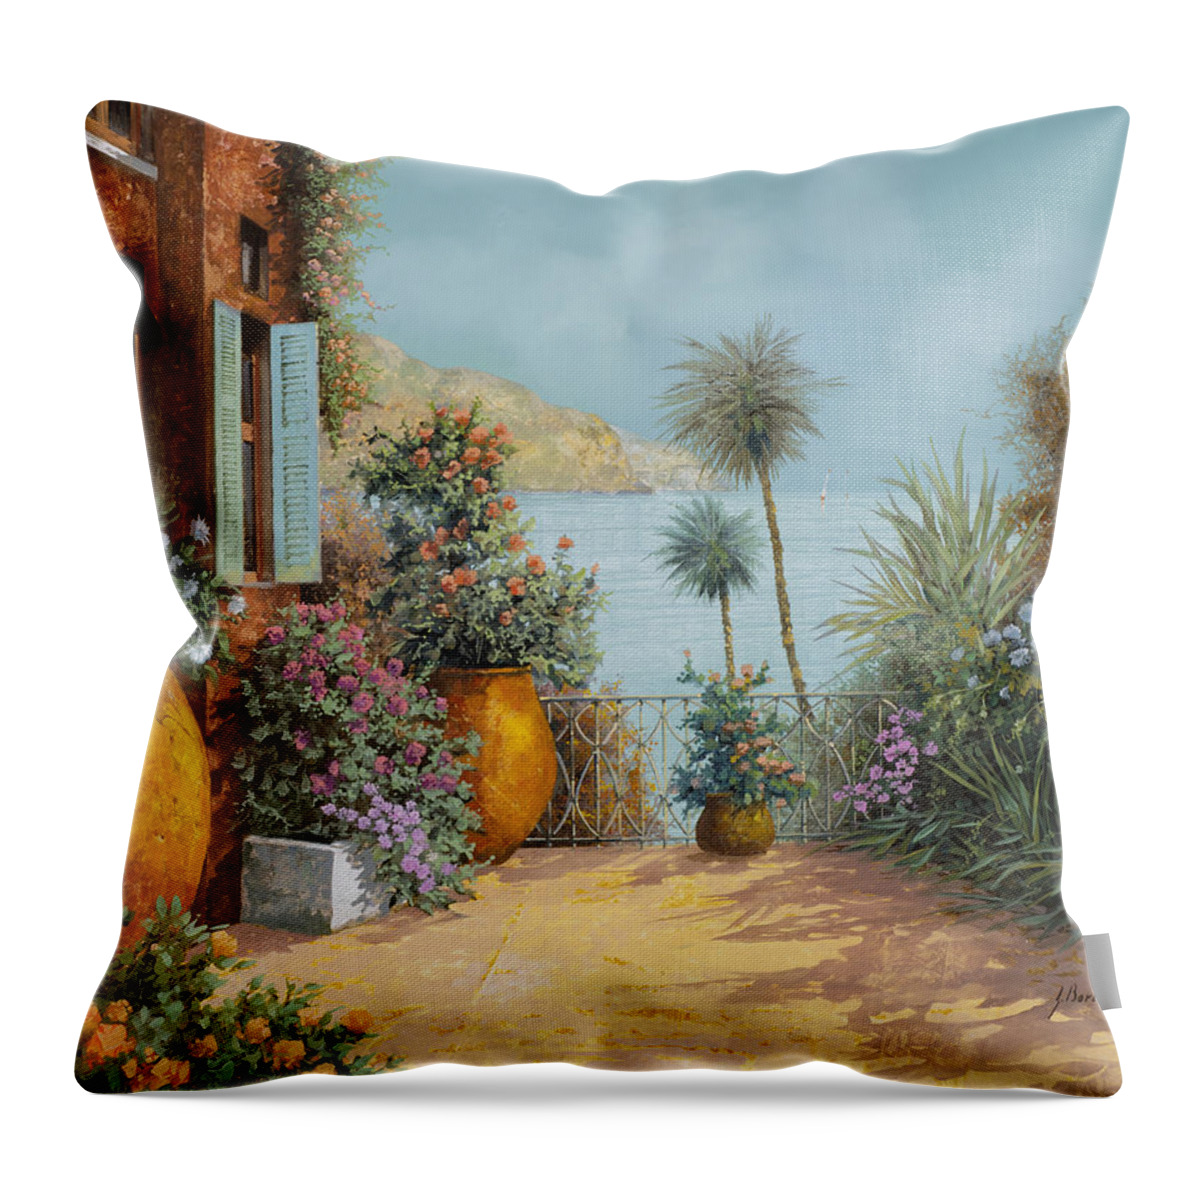 Seascape Throw Pillow featuring the painting Gli Otri Sul Terrazzo by Guido Borelli